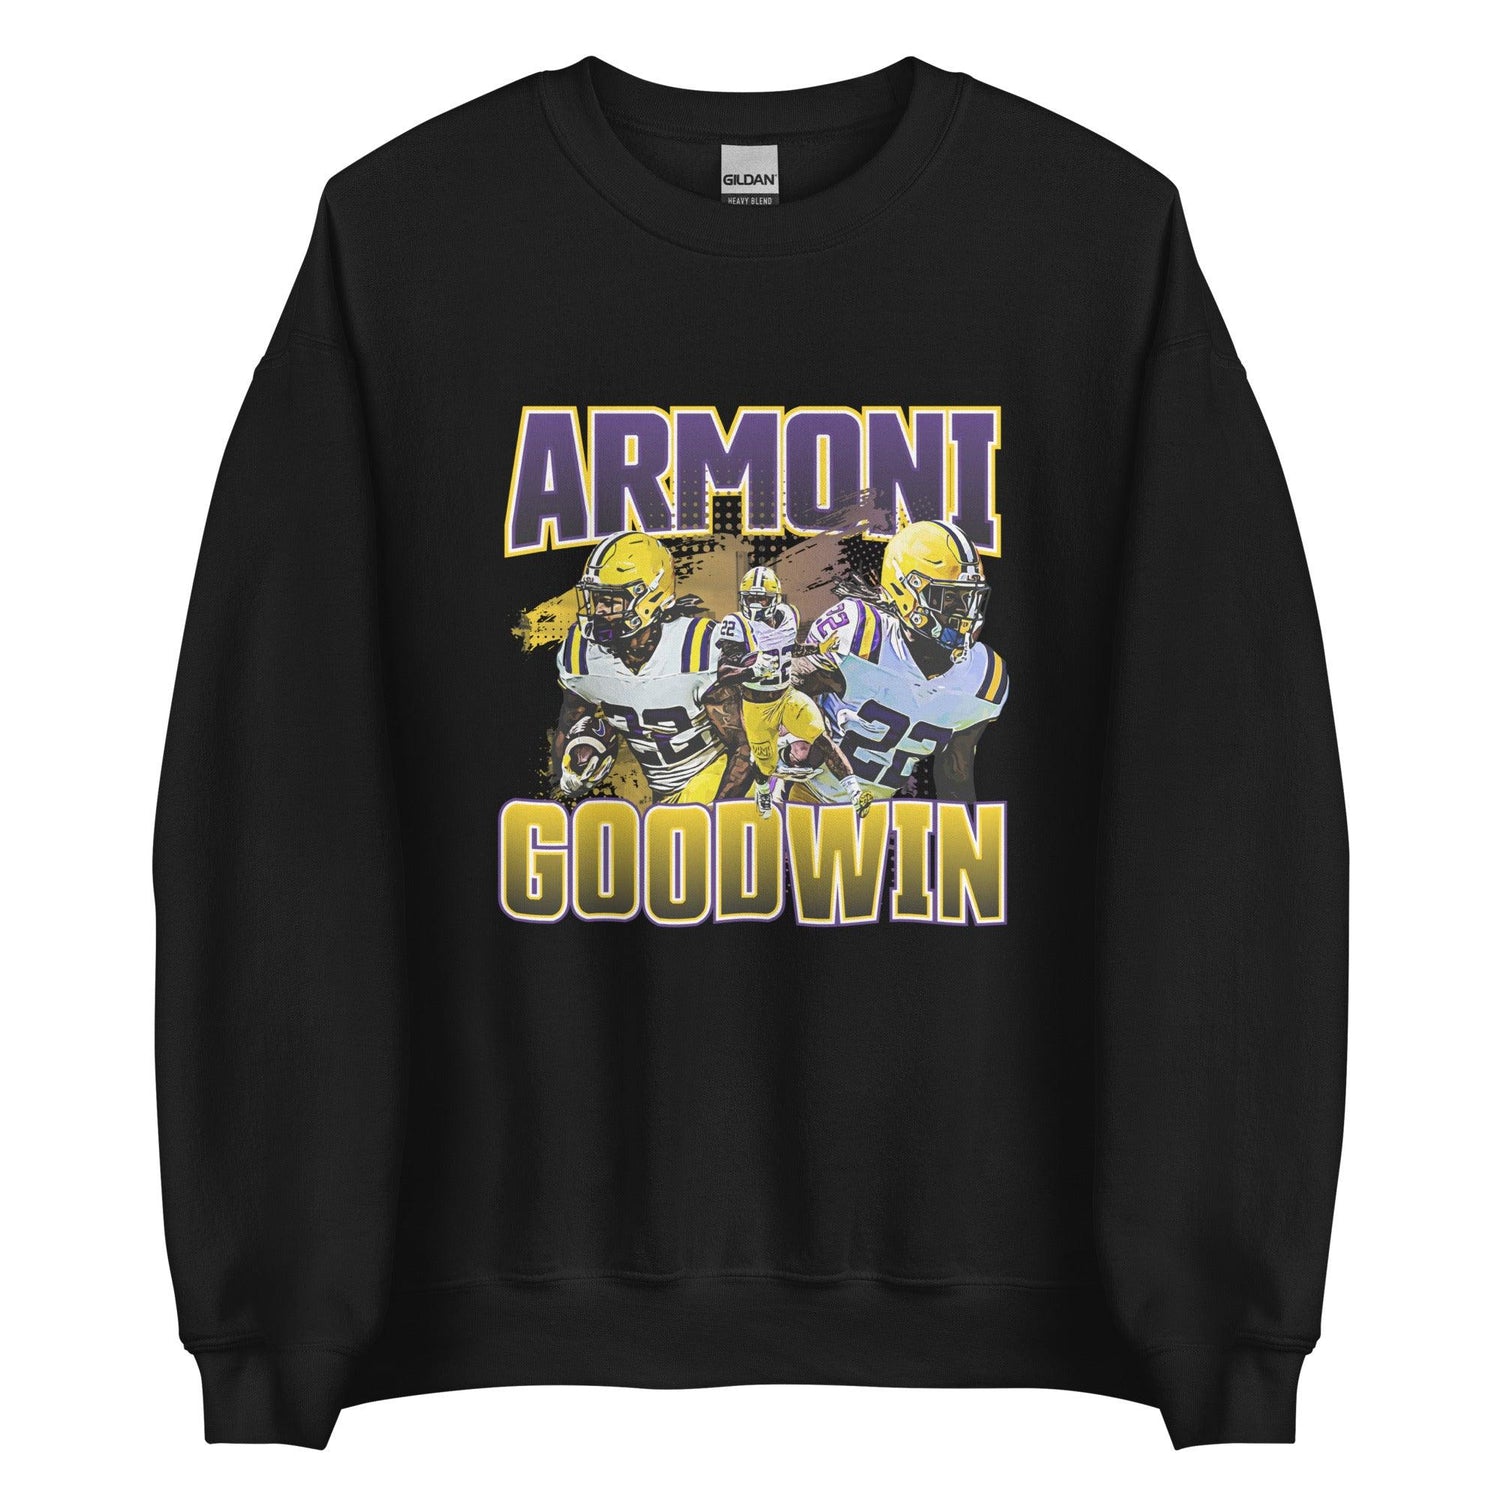 Armoni Goodwin "Vintage" Sweatshirt - Fan Arch